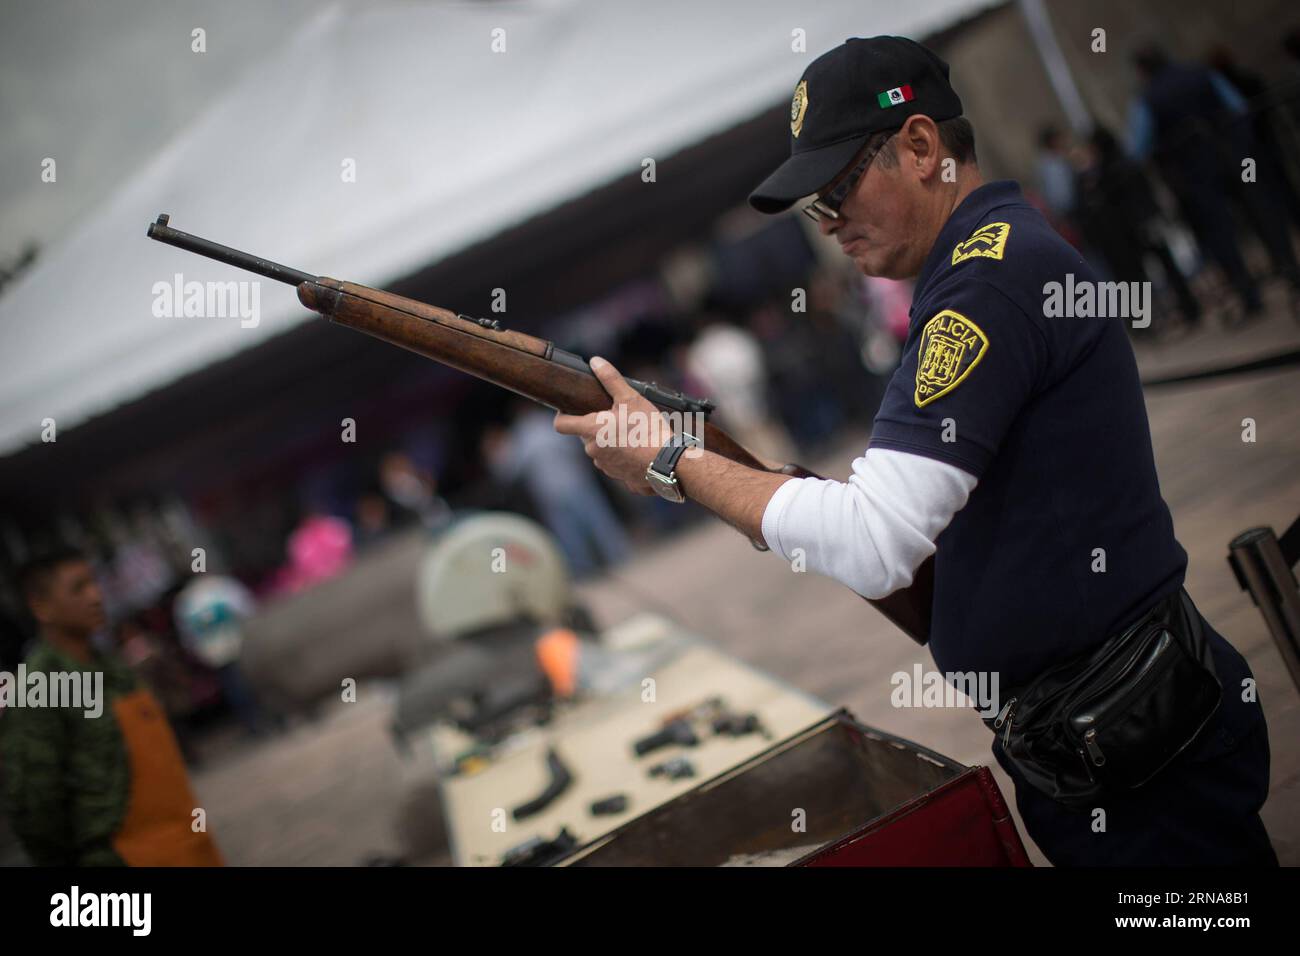 (160112) -- CITTÀ DEL MESSICO, 12 gennaio 2016 -- Un poliziotto controlla un'arma durante la sesta fase del programma per la vostra famiglia, disarmo volontario , presso la Cattedrale metropolitana, a città del Messico, capitale del Messico, il 12 gennaio 2016. Secondo la stampa locale il governo del Distretto Federale (GDF, per il suo acronimo in spagnolo), ha effettuato la sesta fase di scambio di armi attraverso il programma per la vostra famiglia, il disarmo volontario , in cui la gente può scambiare armi e pistole giocattolo per denaro, provviste e dispositivi elettronici. Le armi scambiate sono esaminate dai membri della polizia e.. Foto Stock